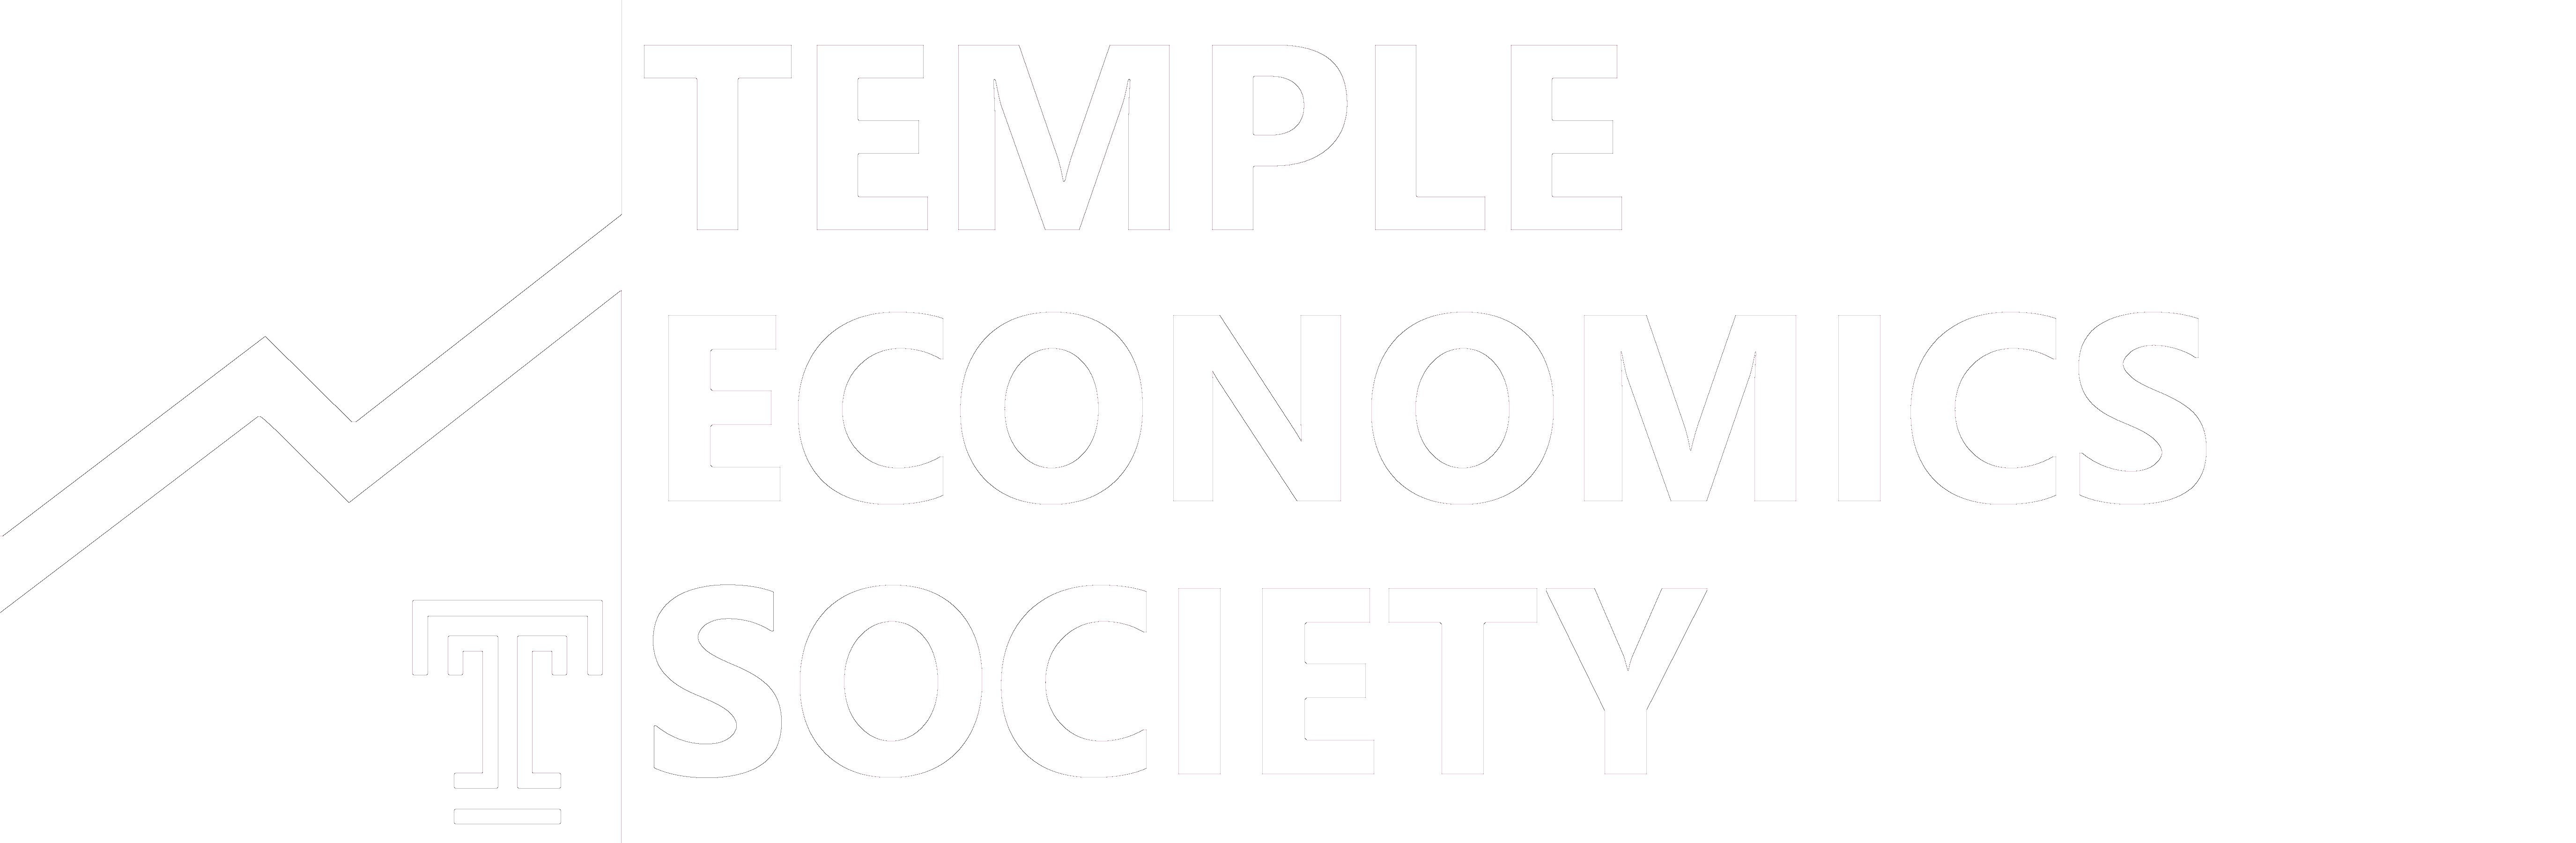 Temple Economics Society